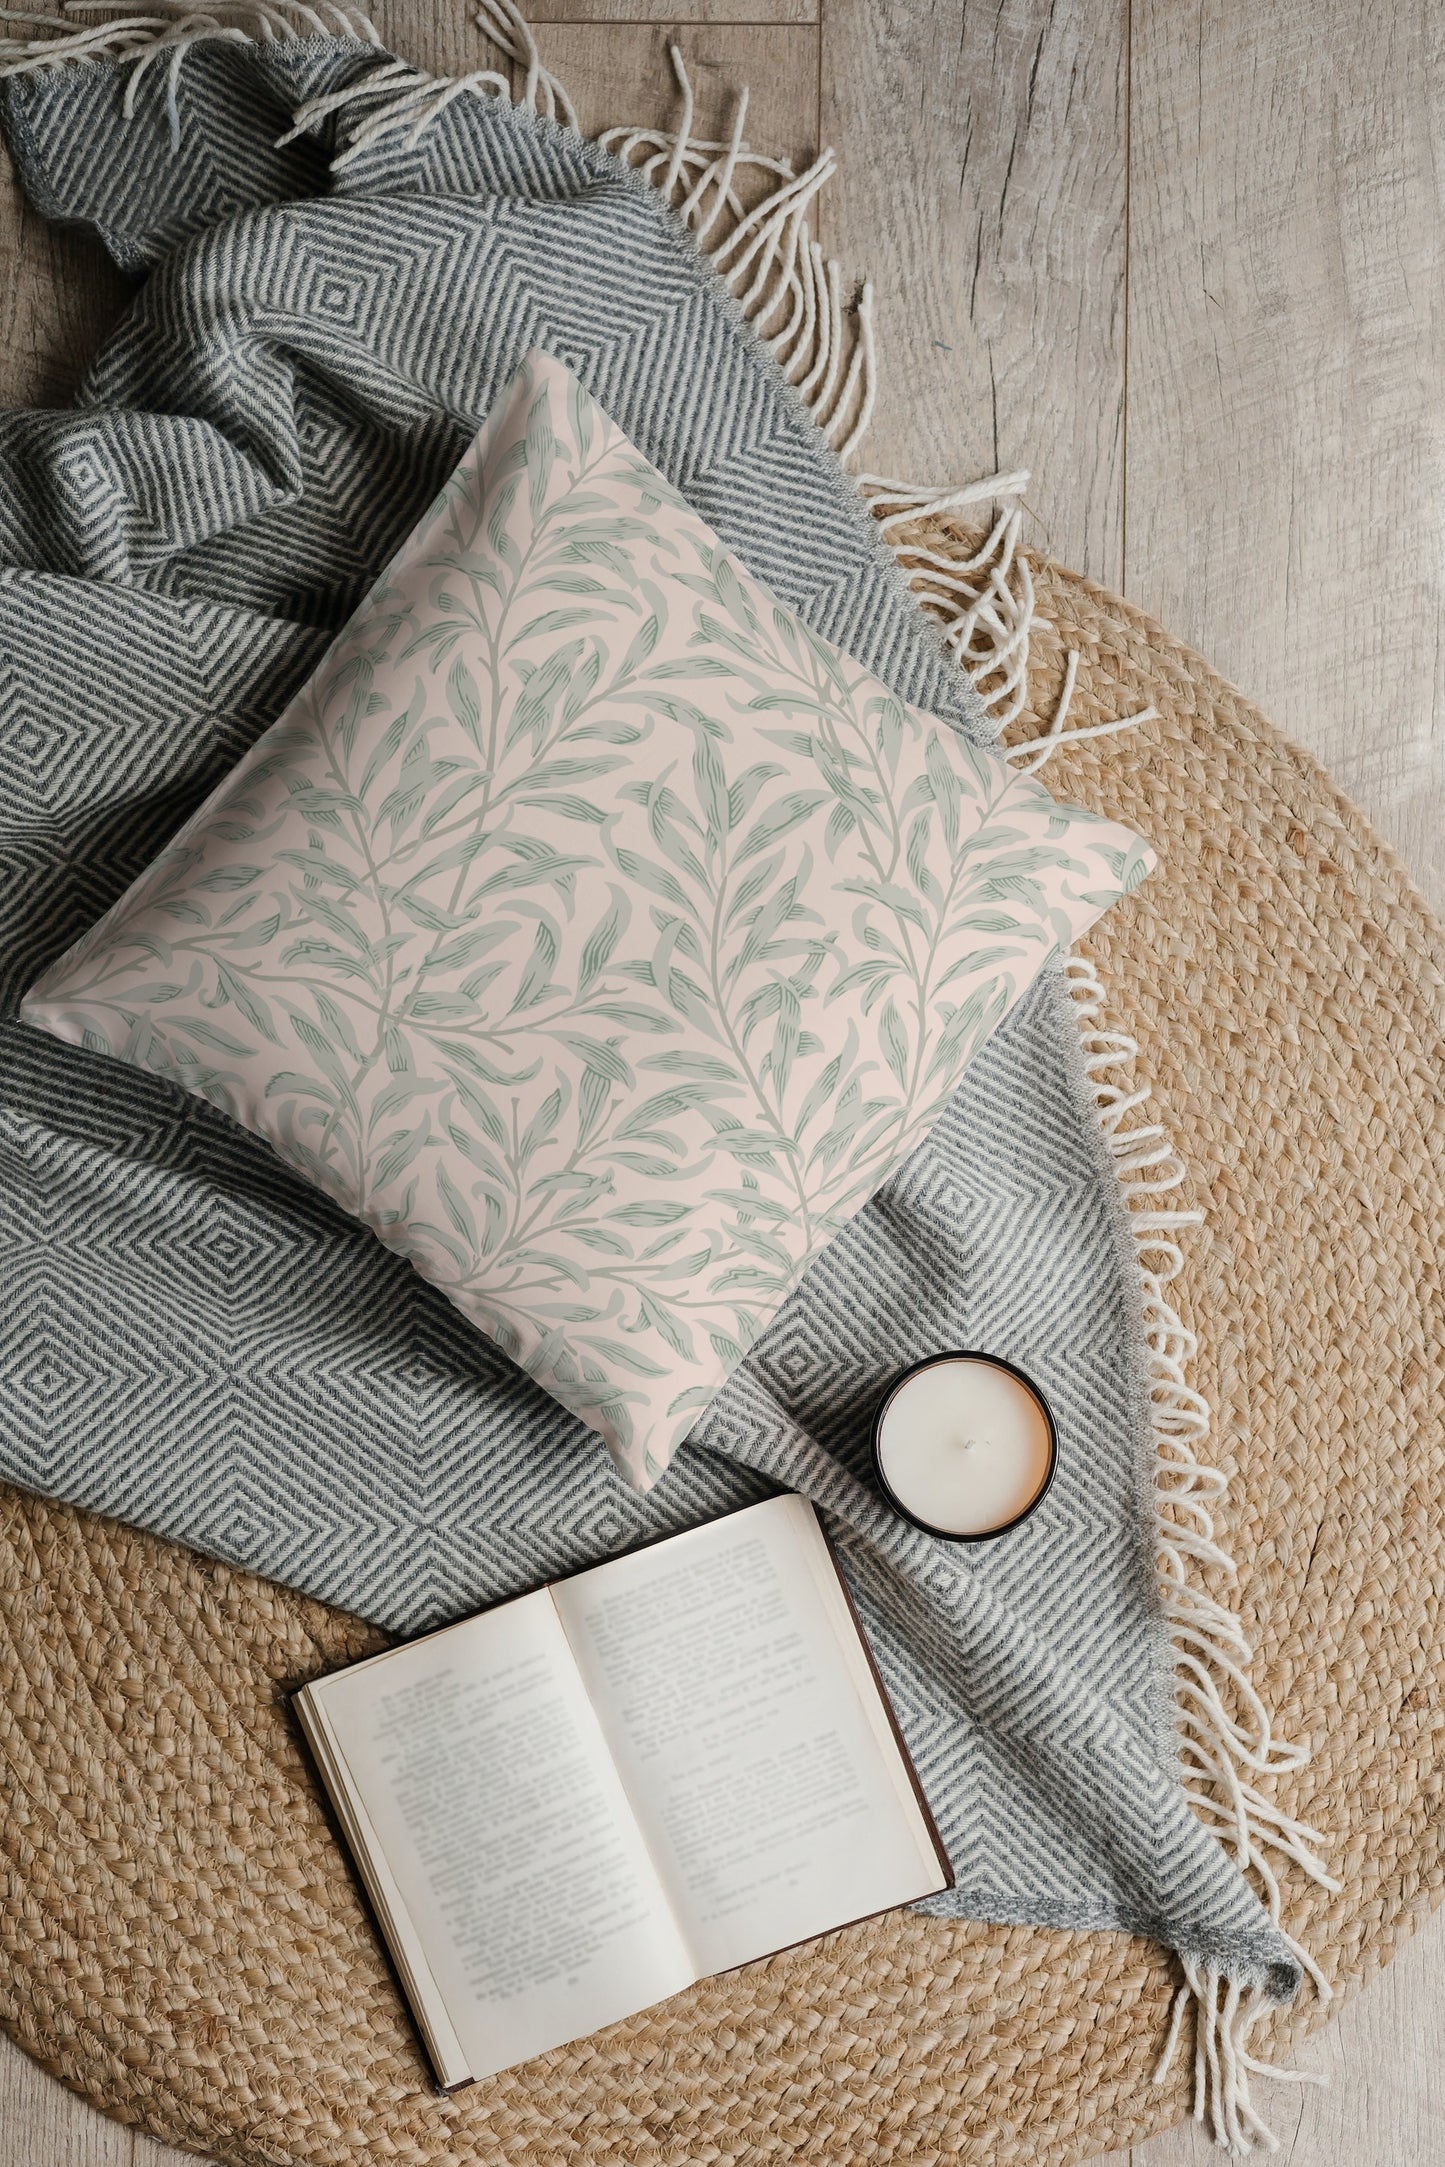 William Morris Cotton Pillows Peach Cream Willow